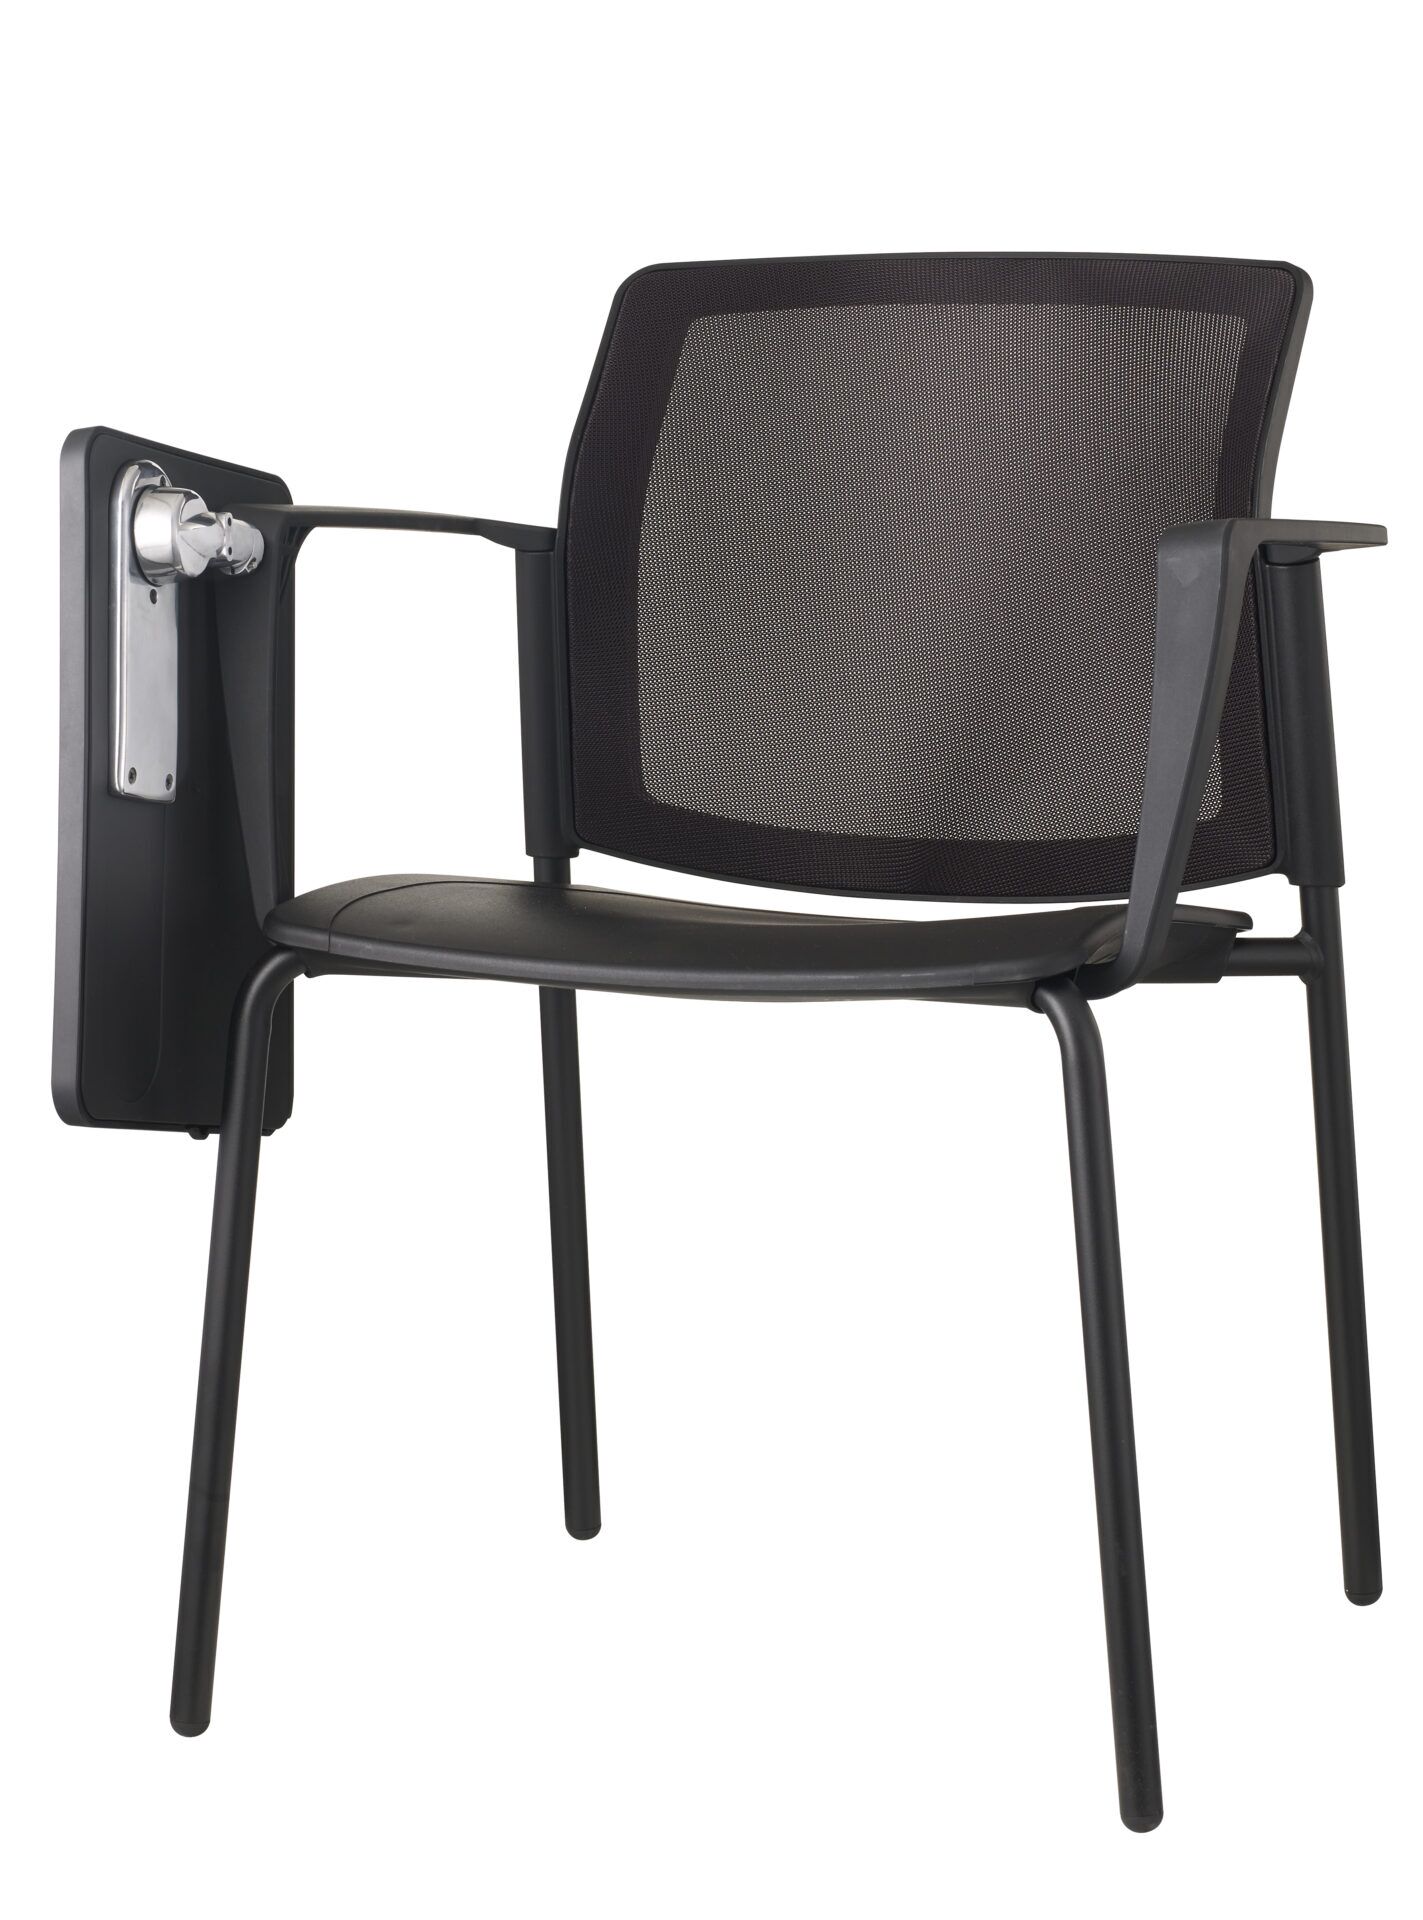 Czarne krzesło biurowe z podkładką po skosie od przodu prawo 4job BGroup